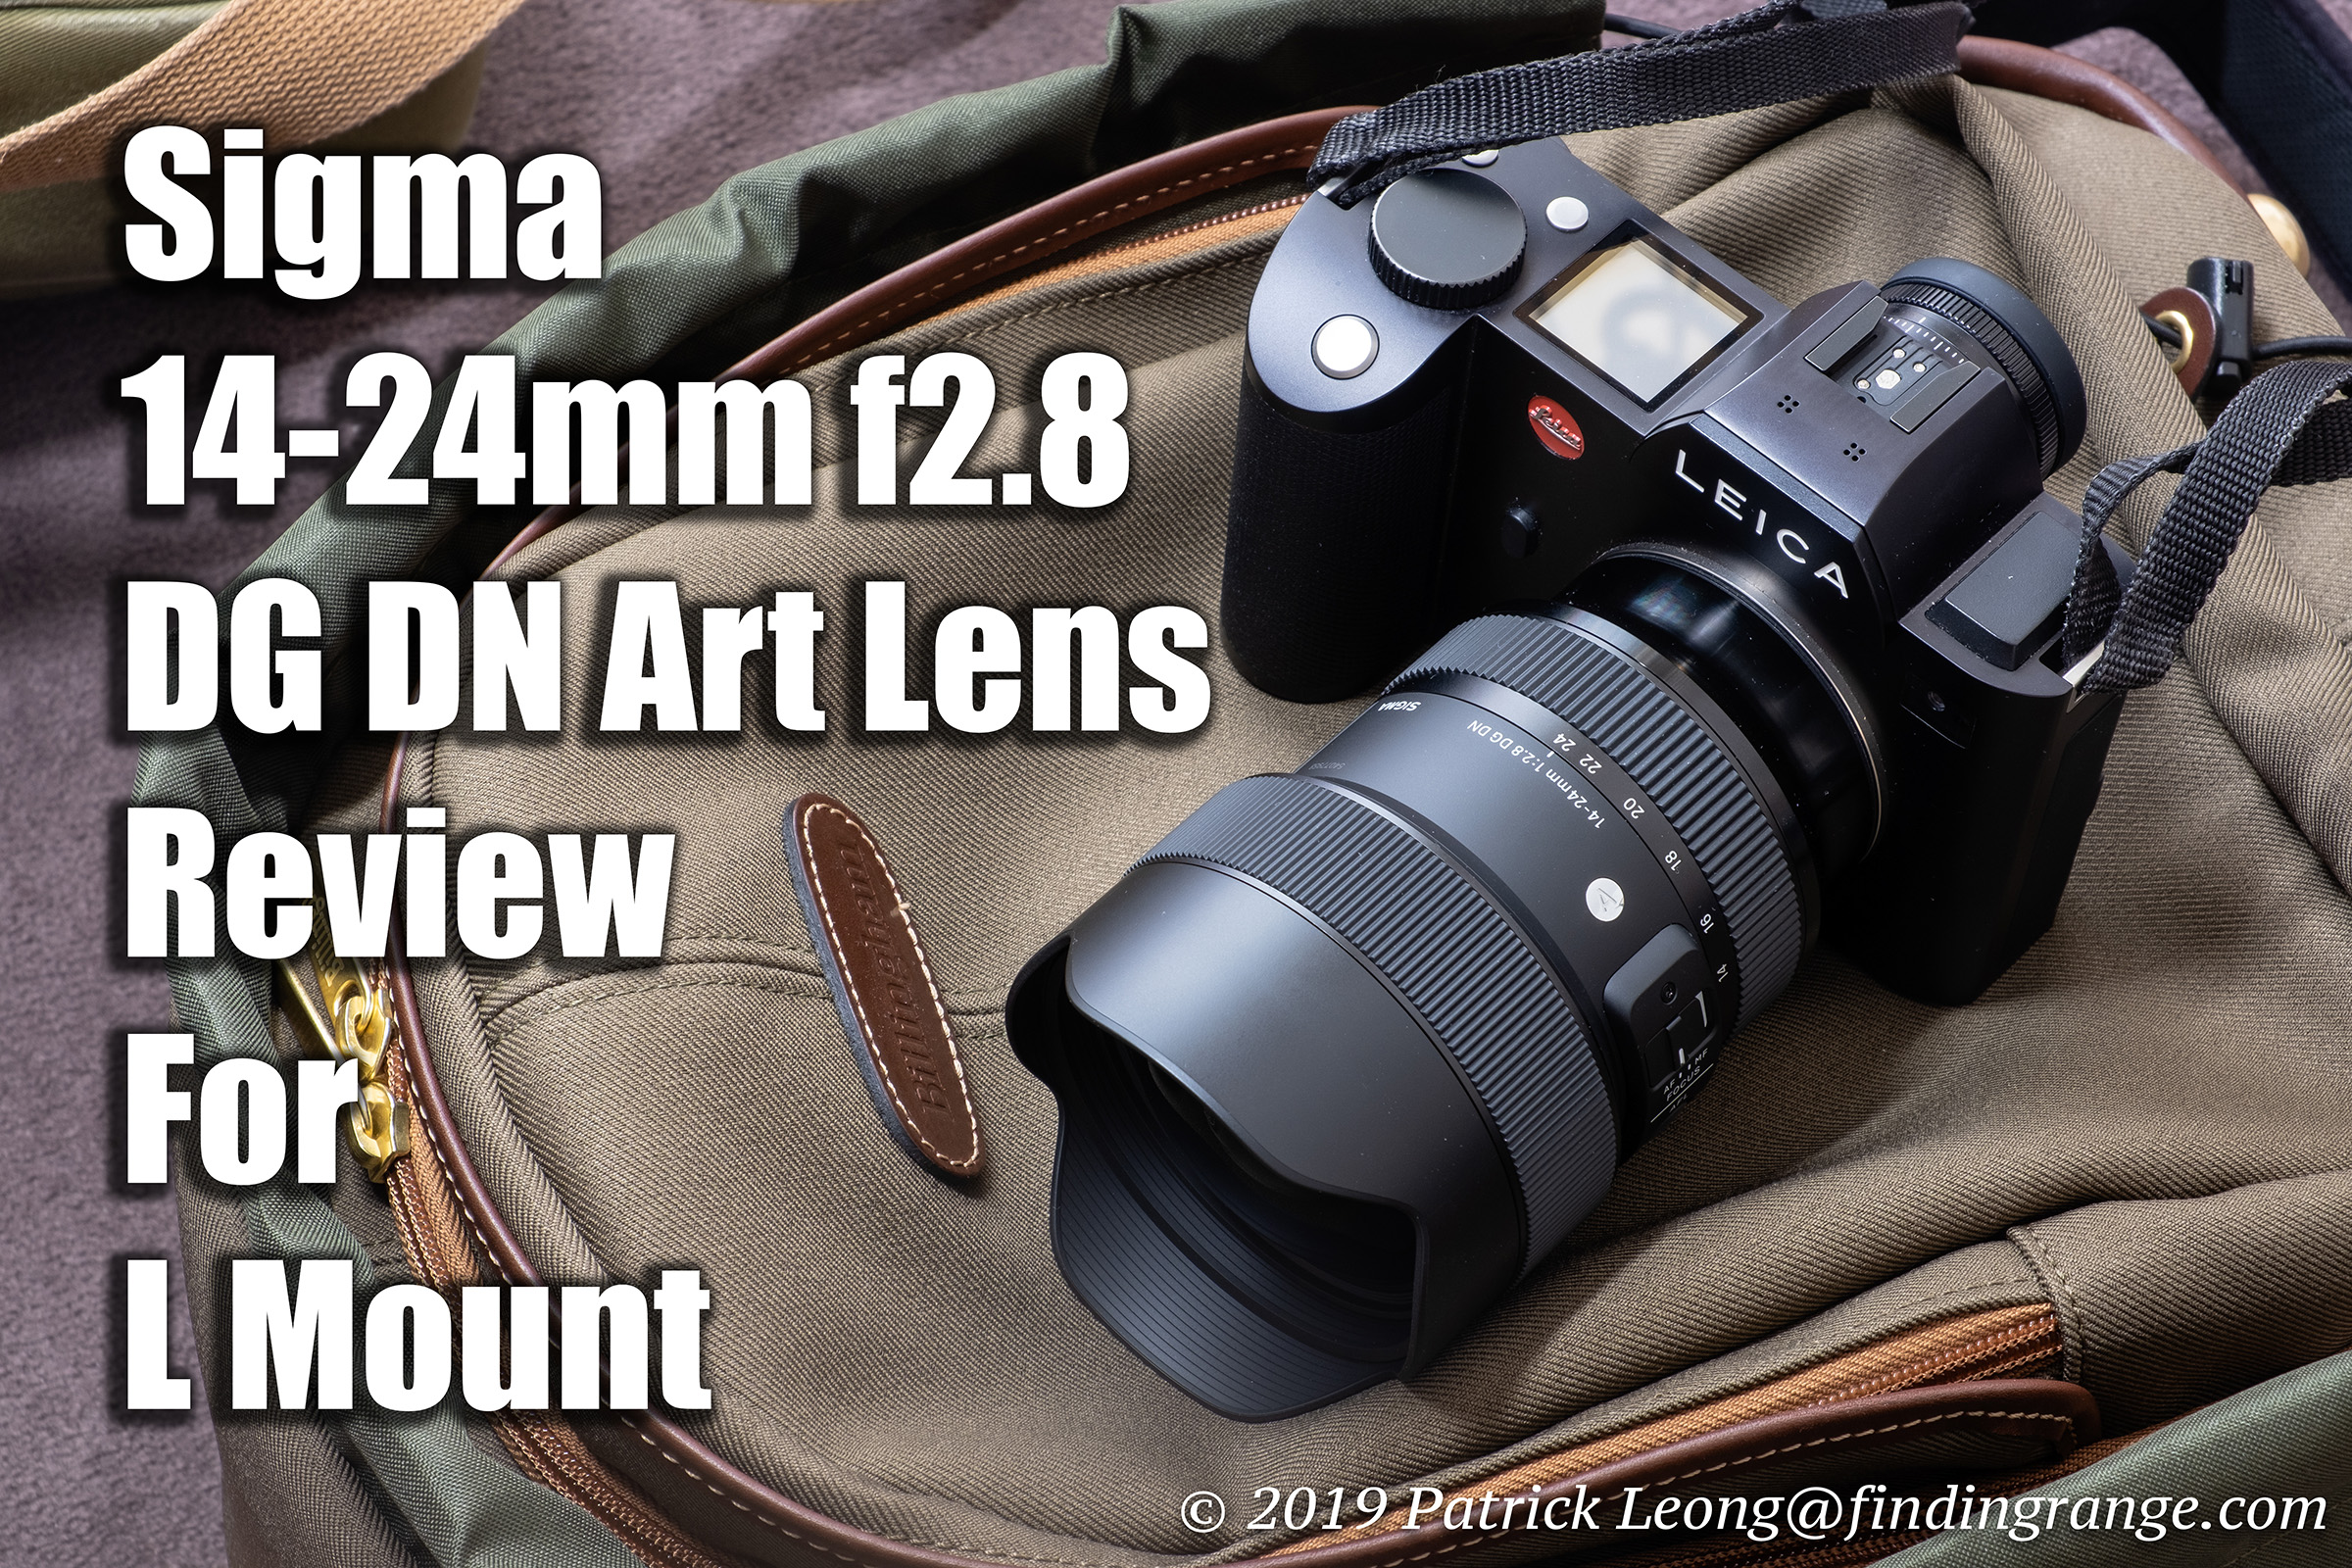 カメラ レンズ(ズーム) Sigma 14-24mm f2.8 DG DN Art Lens Review For L Mount